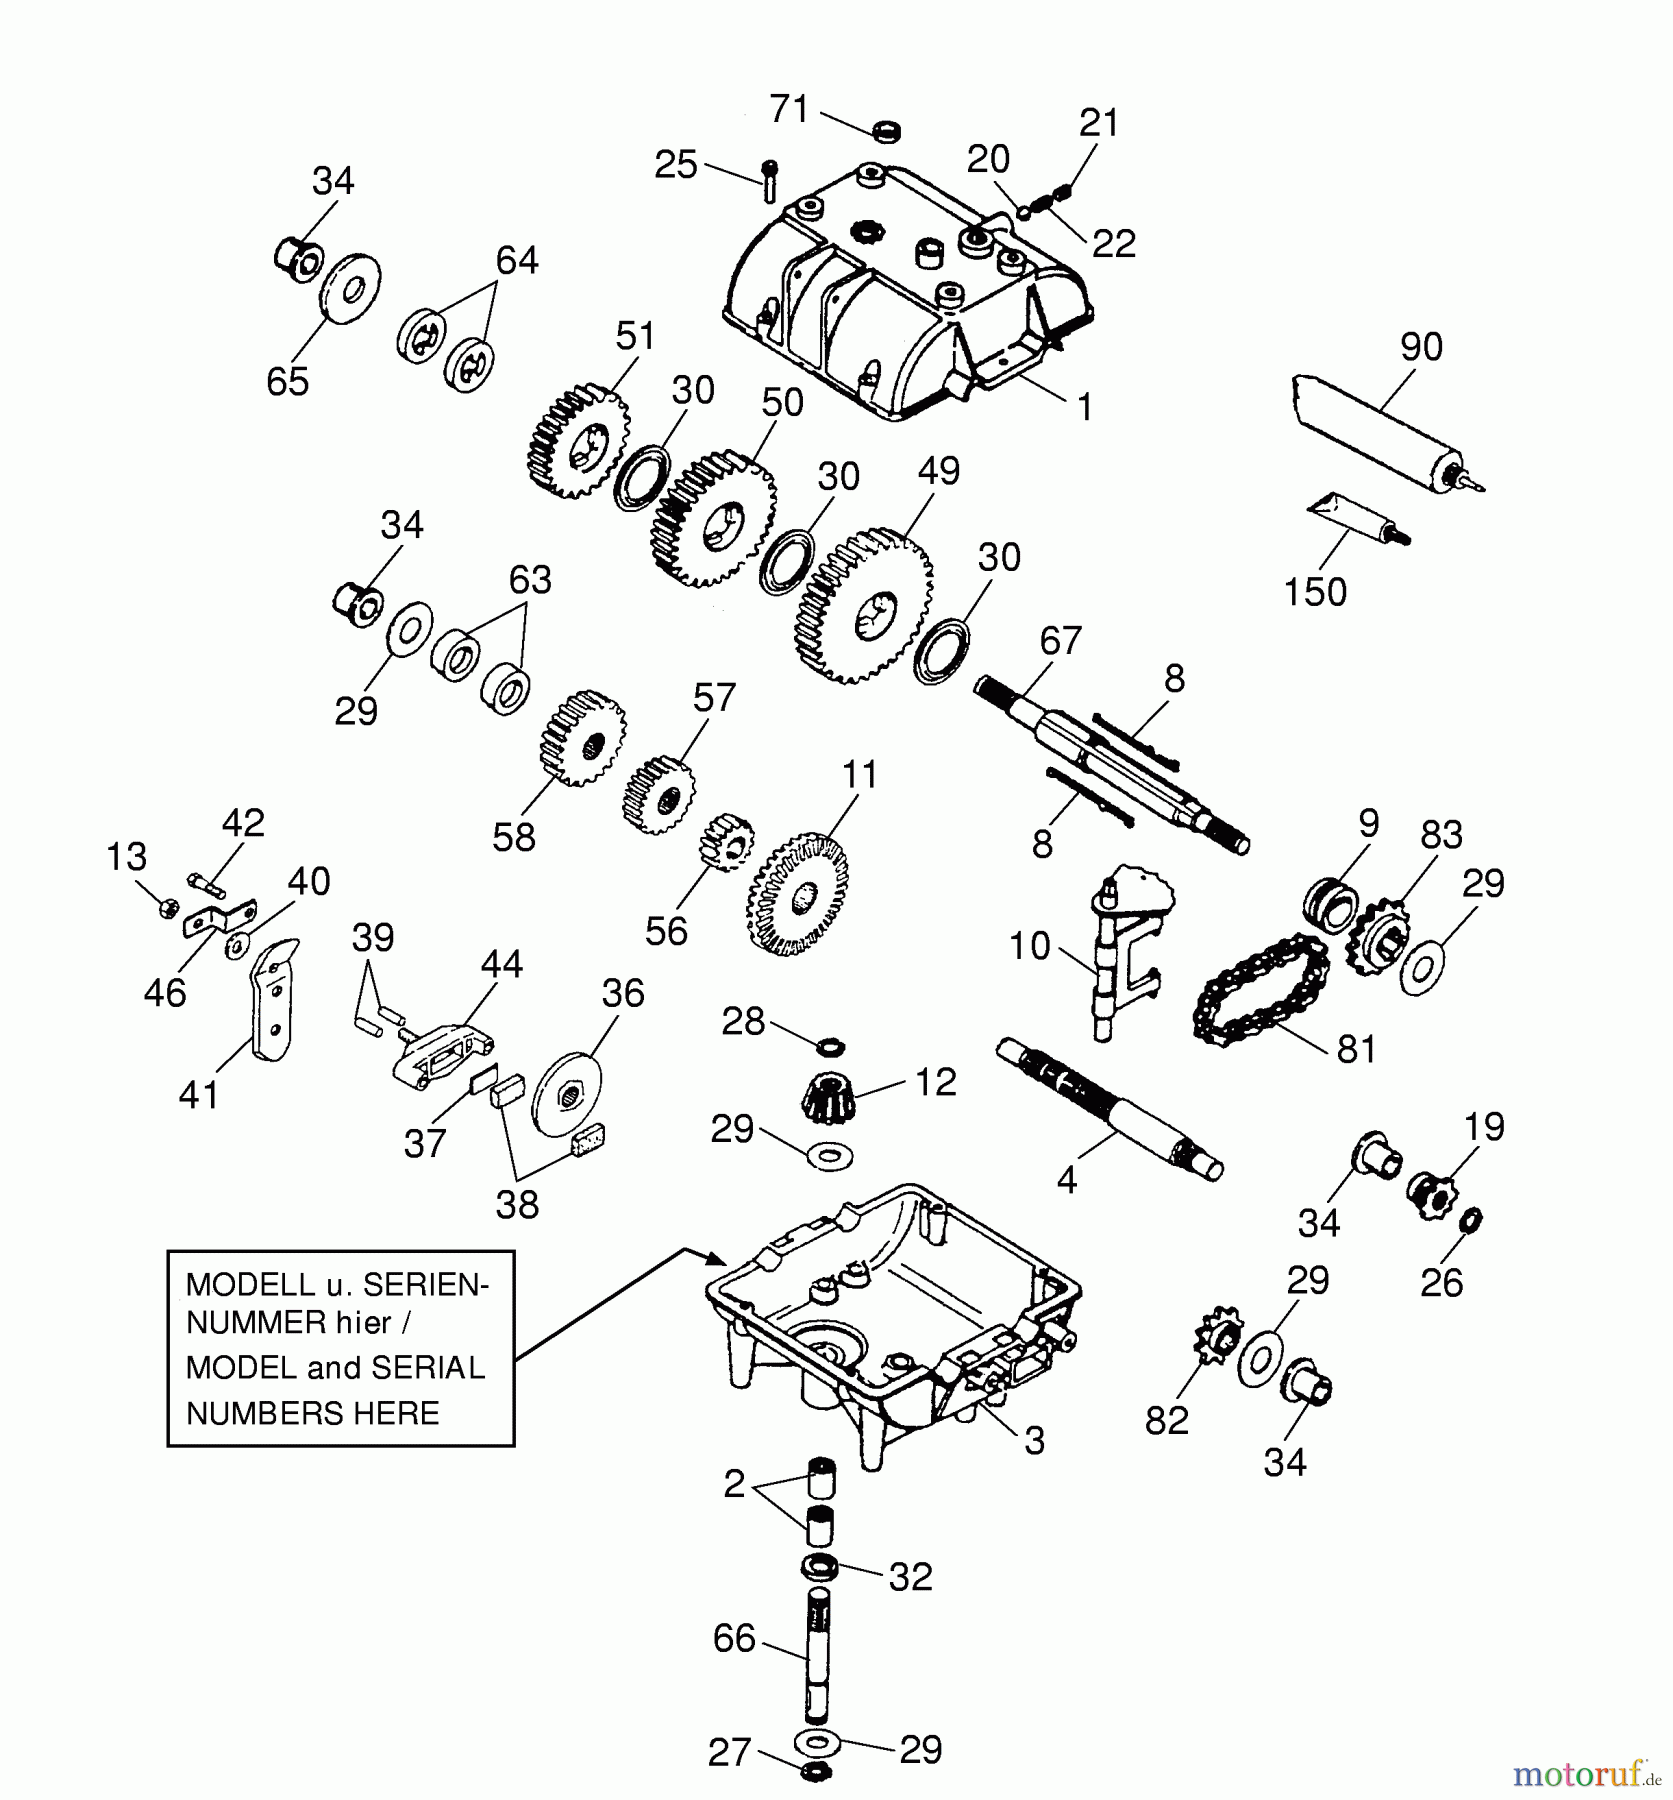  Wolf-Garten Scooter OHV 3 6990000 Serie A, B  (1998) Getriebe